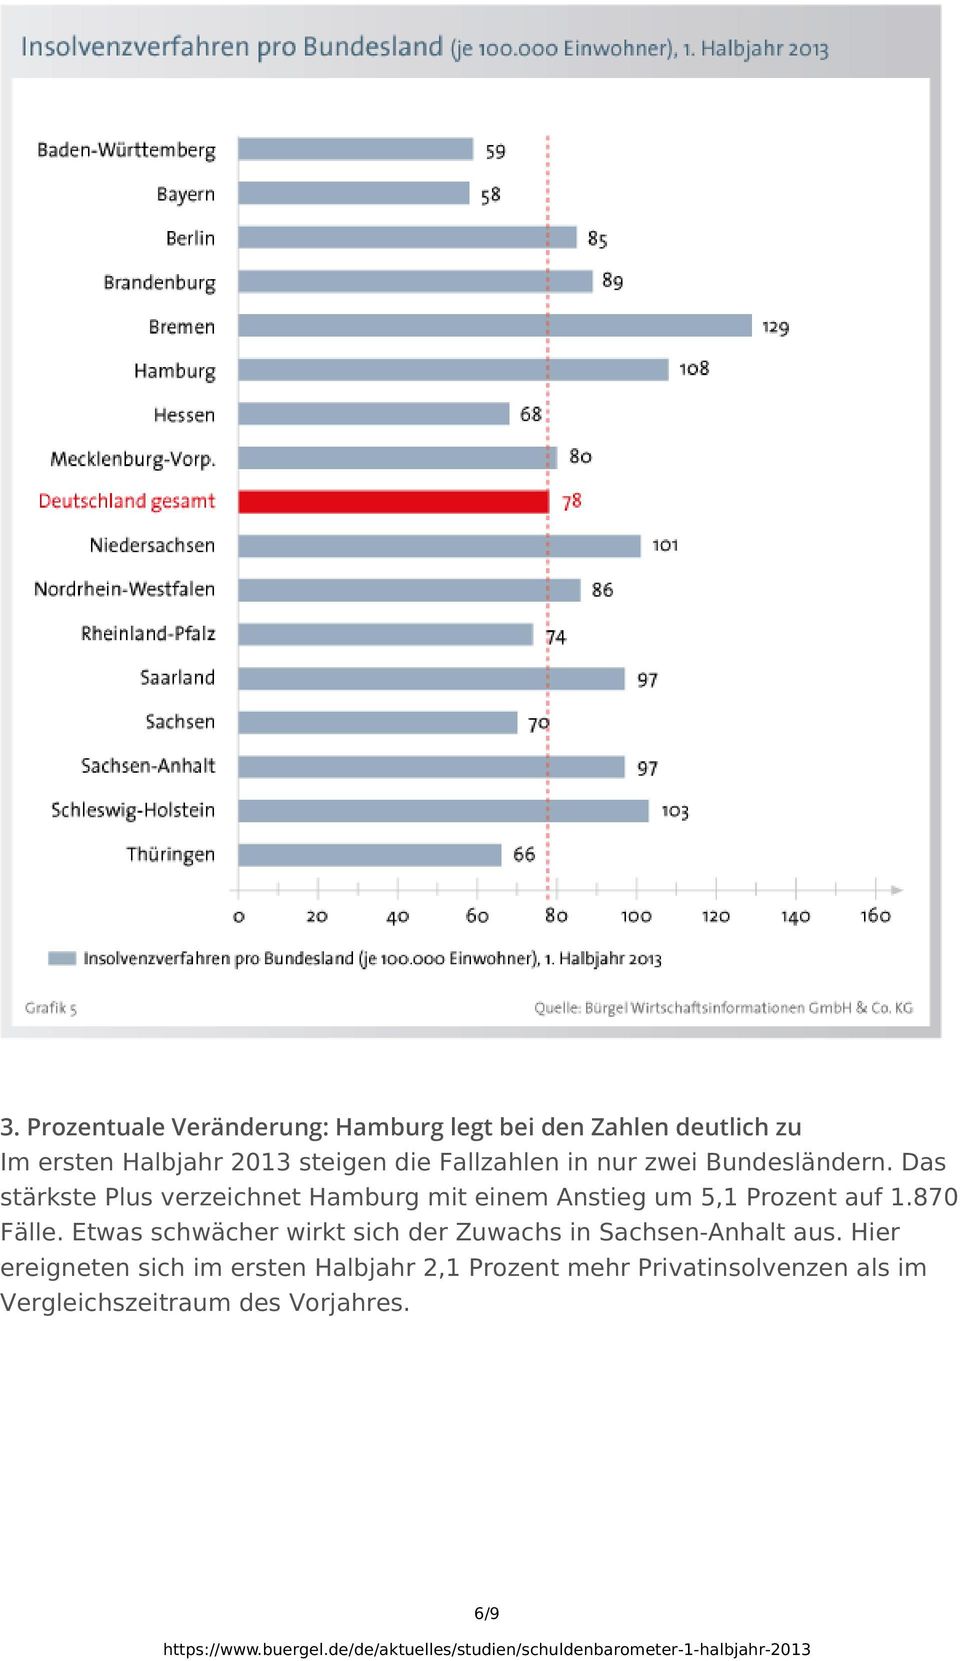 Das stärkste Plus verzeichnet Hamburg mit einem Anstieg um 5,1 Prozent auf 1.870 Fälle.